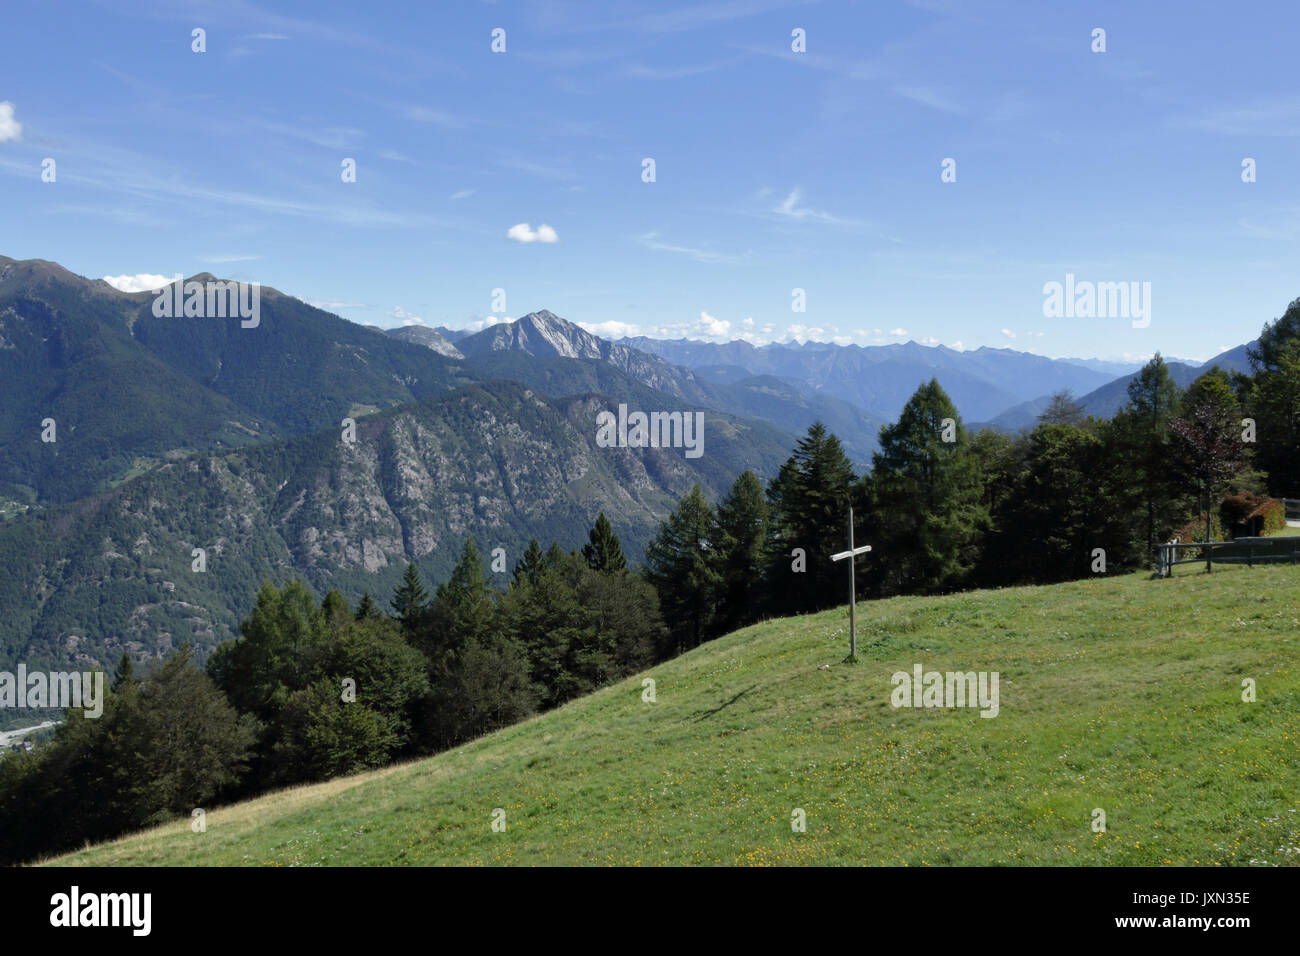 Eine Landschaft von grünen Bergen mit Kiefern und Tannen, Felsen und Gletscher, im Vigezzo Tal, Nördliche Alpen Stockfoto